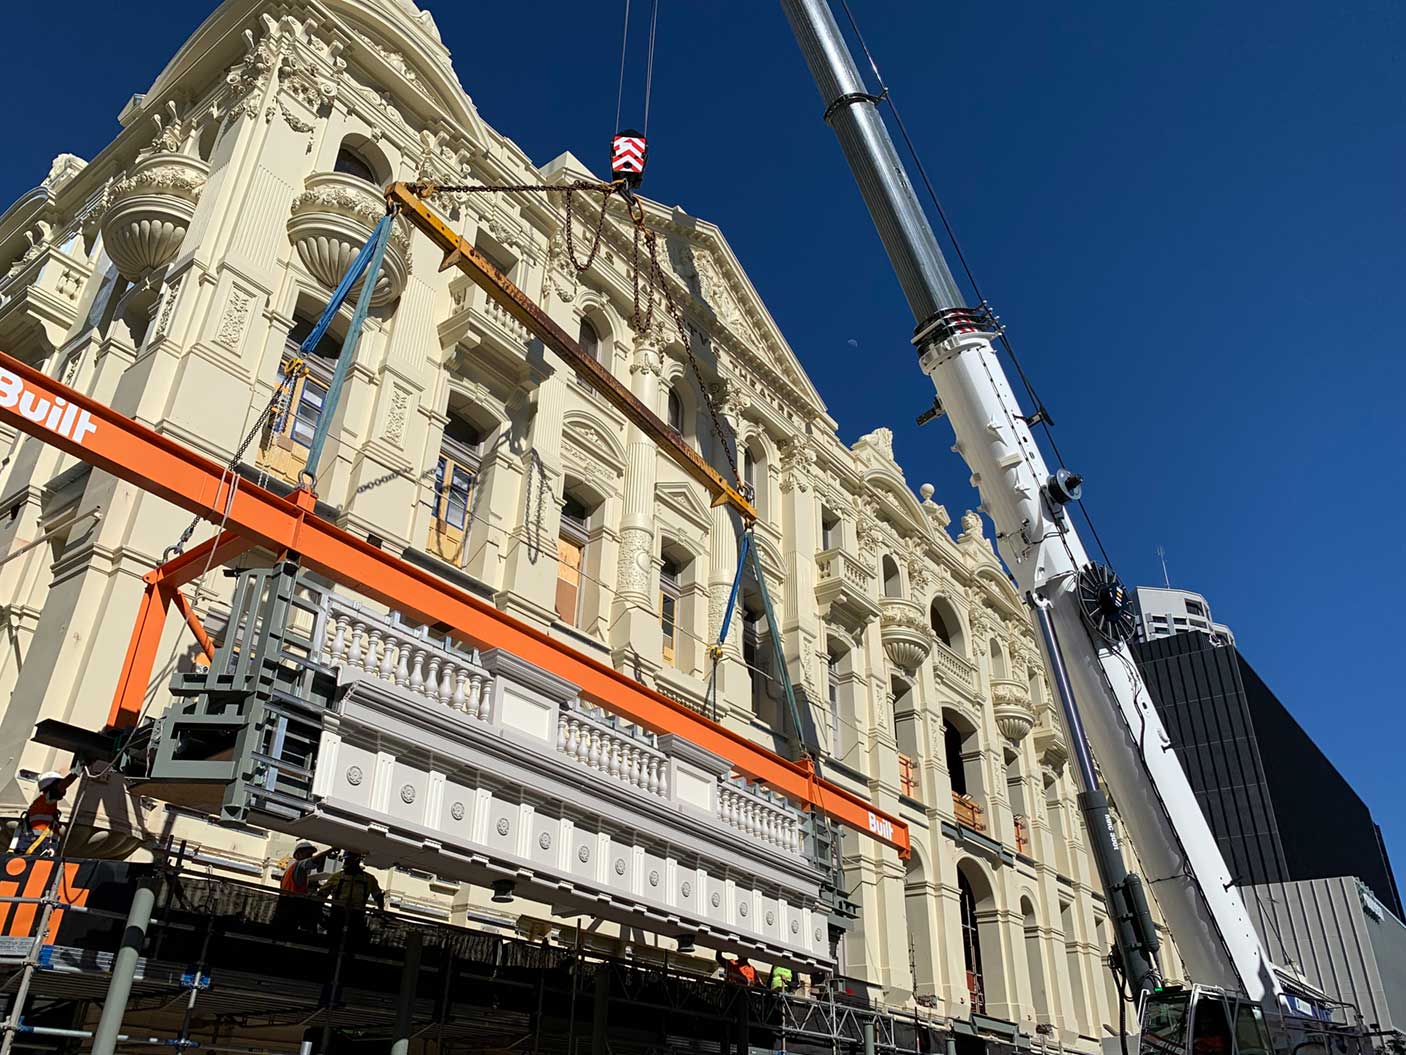 起重机正在吊起皇家剧院修复后的阳台